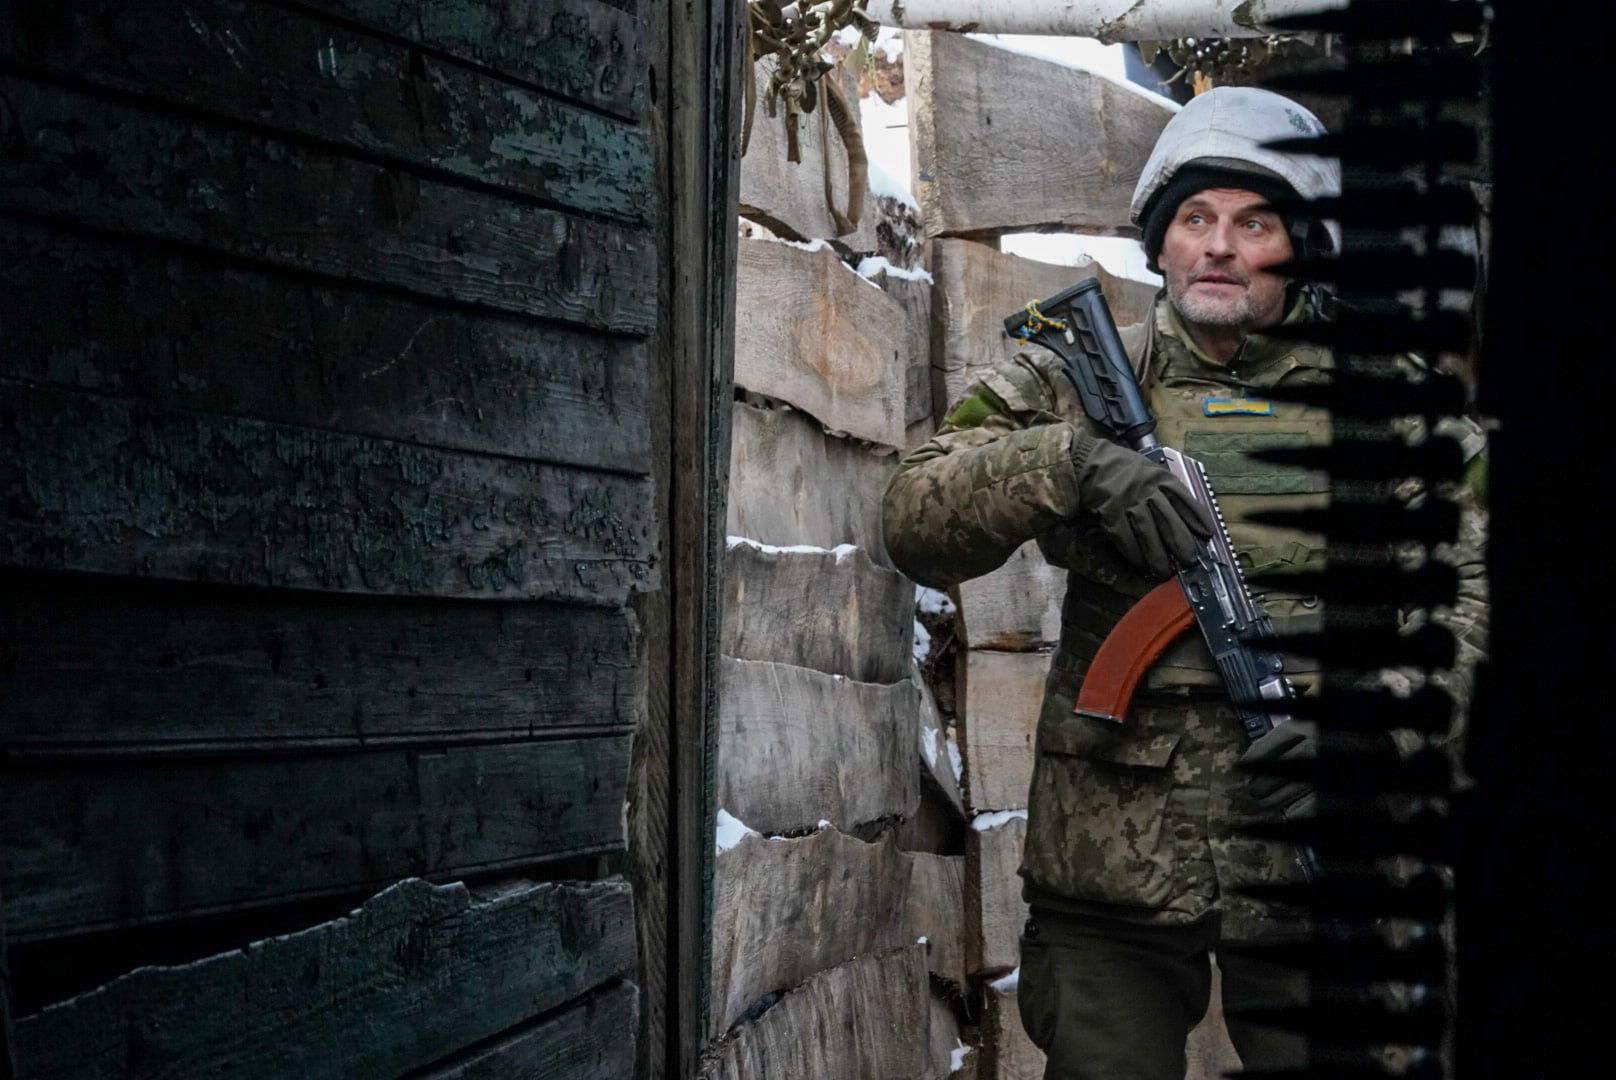 Захисники України в районі ООС готові до будь-яких сценаріїв – Олександр Павлюк